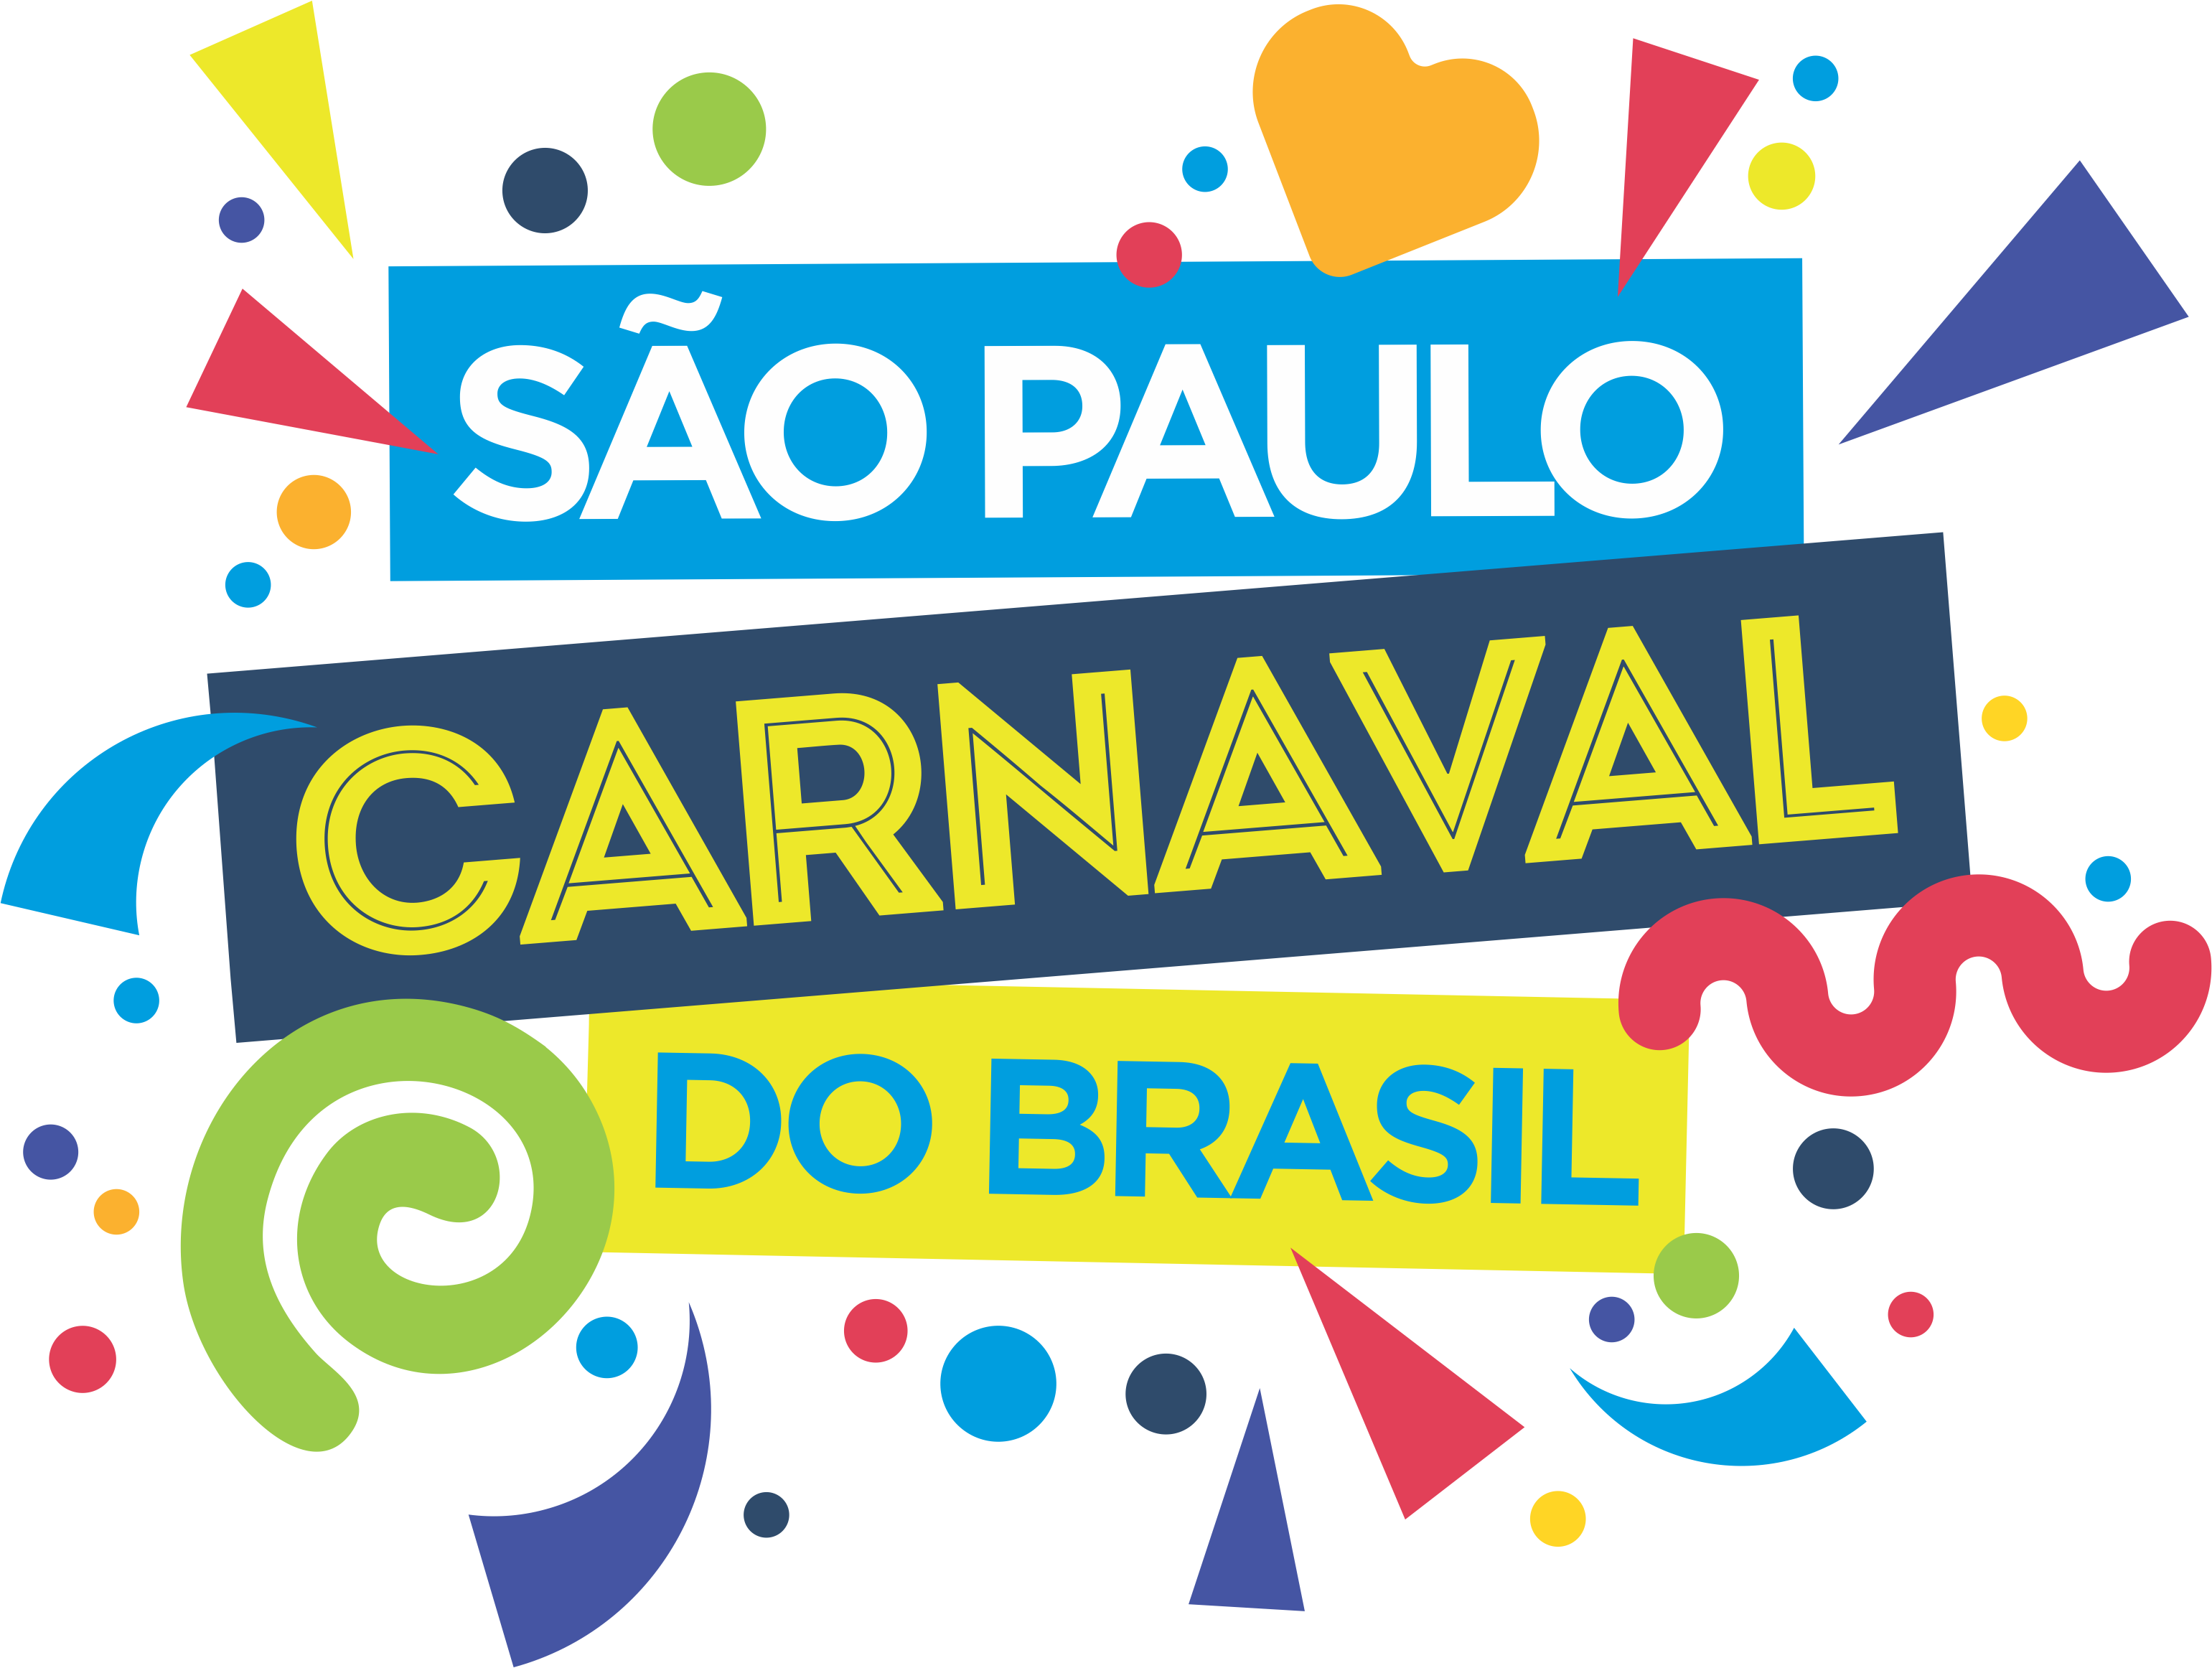 Logotipo do Carnaval de São Paulo 2019